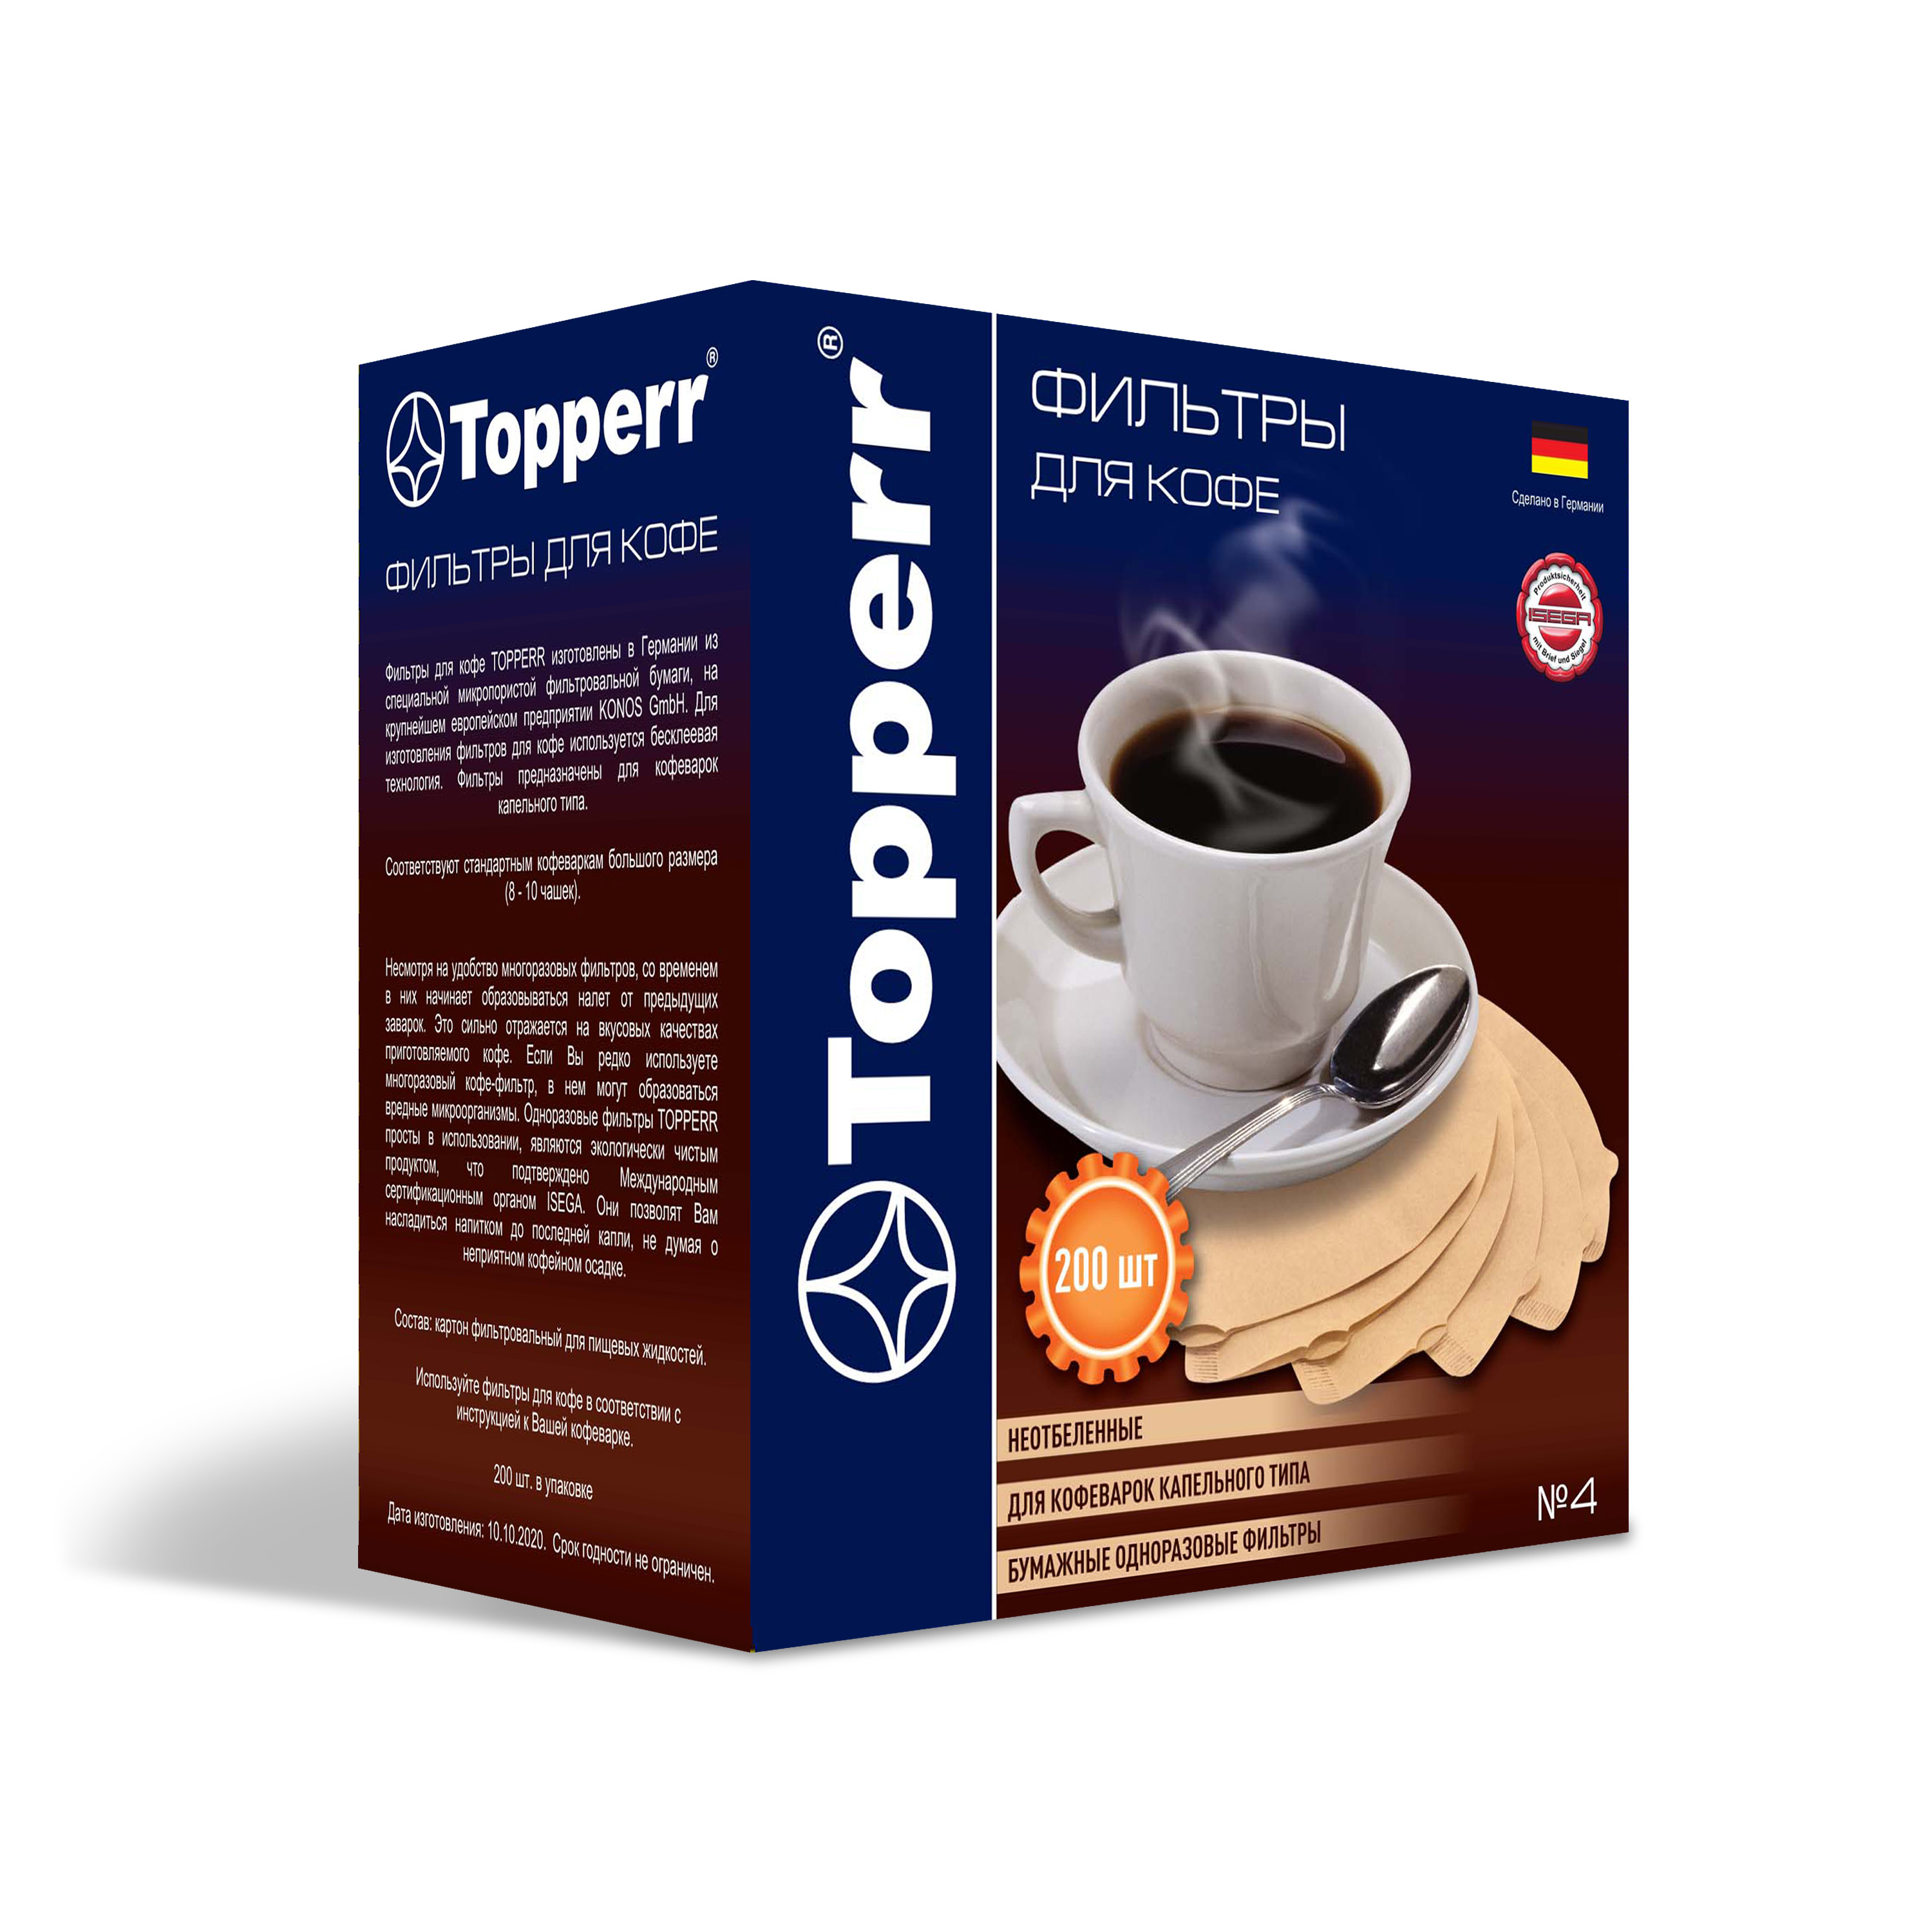 Topperr 3046 Бумажные одноразовые фильтры для кофе №4 200 шт неотбеленные